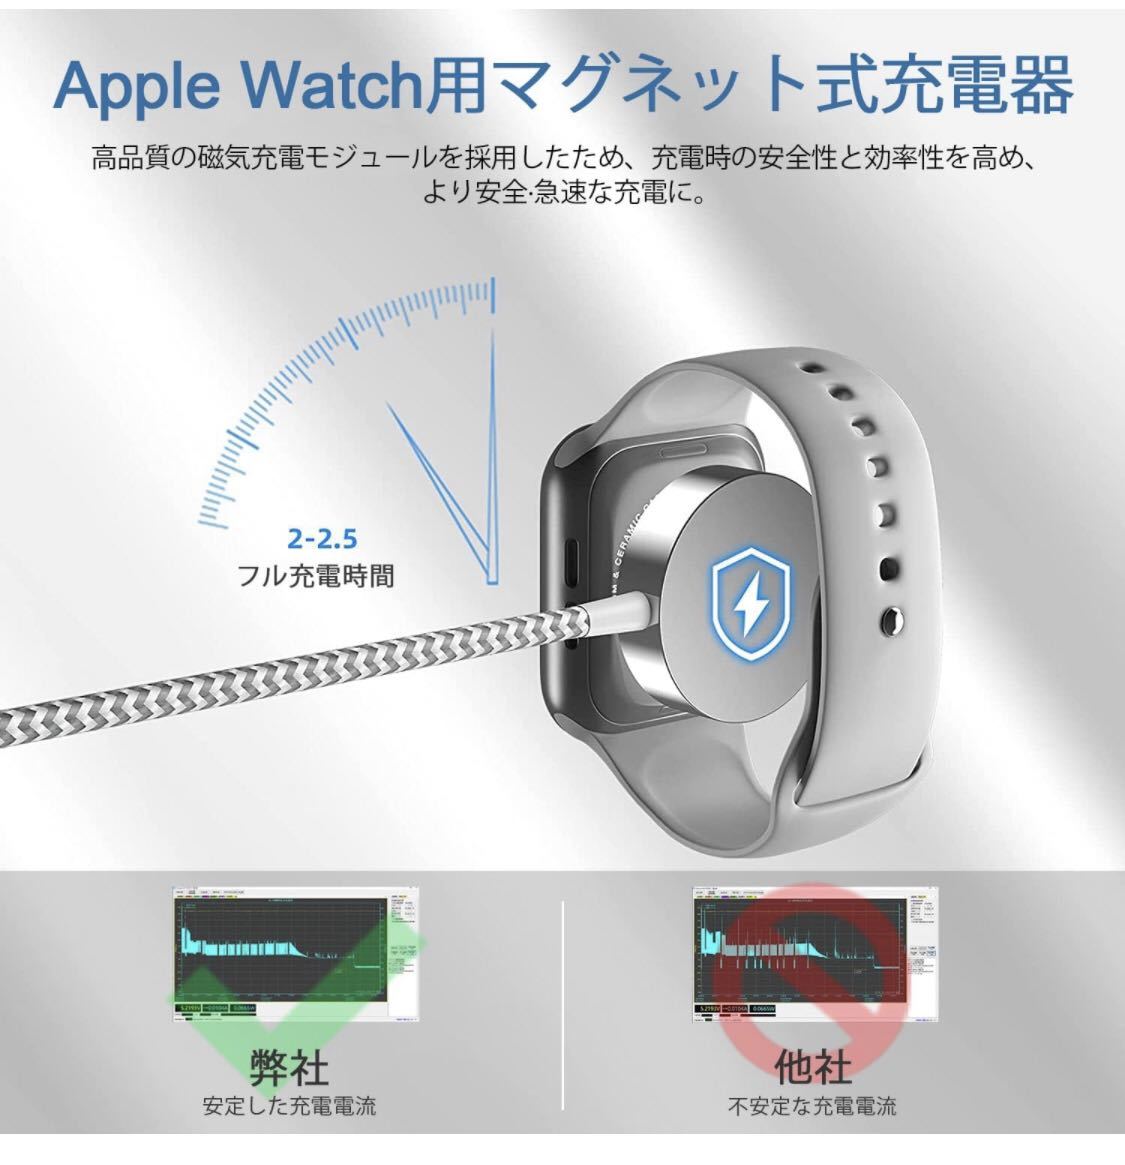 2in1 Apple Watch充電器 アップルウォッチ 充電器 1M マグネット式 ワイヤレス充電 アップルウォッチ充電ケーブル 高耐久ナイロン